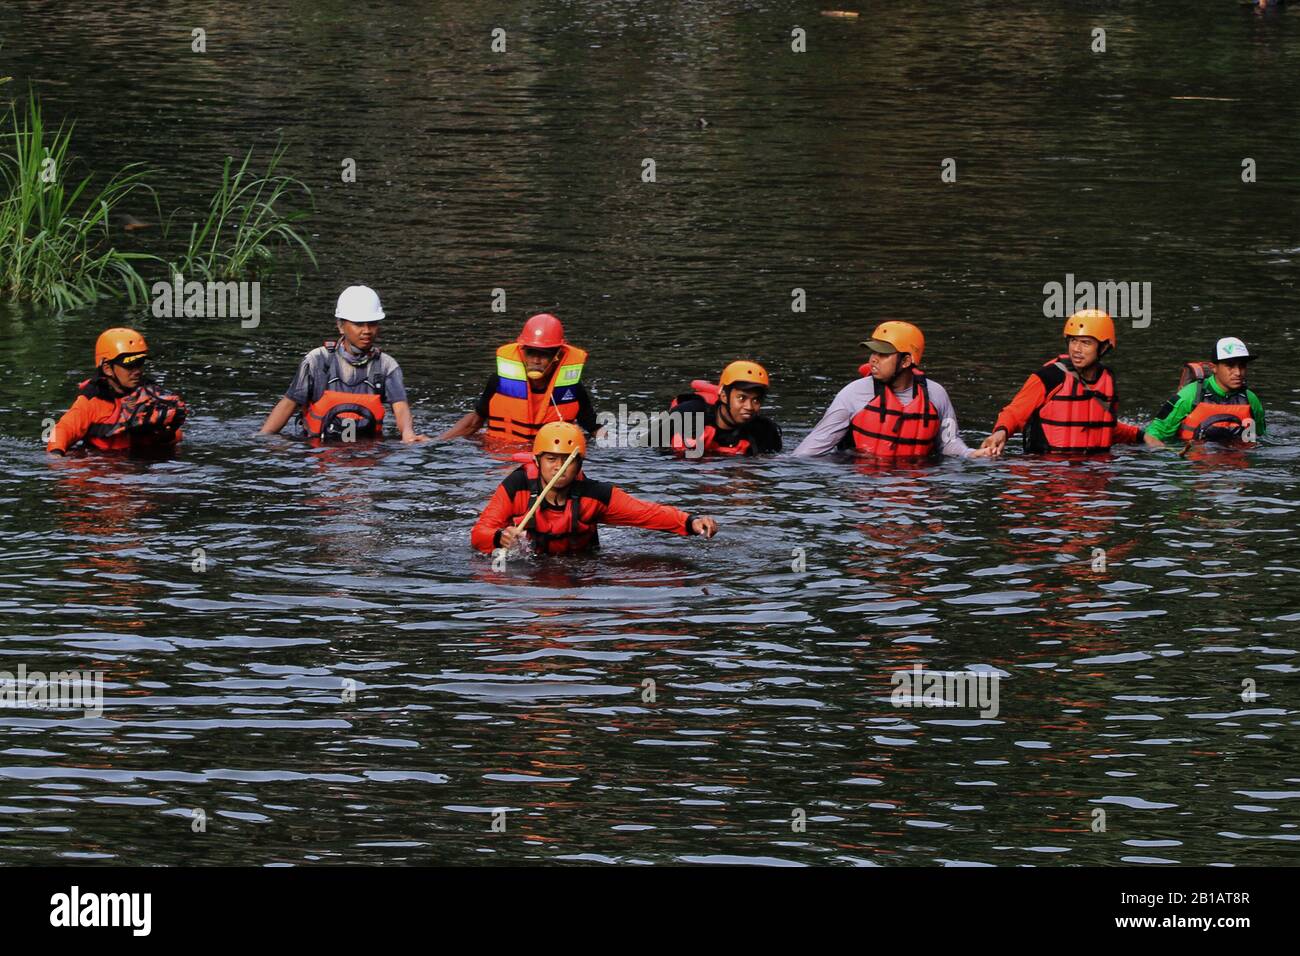 Los rescatadores están buscando niños desaparecidos en el río Sempor, después de inundaciones repentinas en Sleman, Yogyakarta, Indonesia, el sábado 22 de febrero de 2020. Cientos de escolares estaban haciendo senderismo a lo largo del río afectado por las inundaciones repentinas que mataron a nueve niños en edad escolar el 21 de febrero de 2020. (Foto de Devi Rahman/INA Photo Agency/Sipa USA) Foto de stock